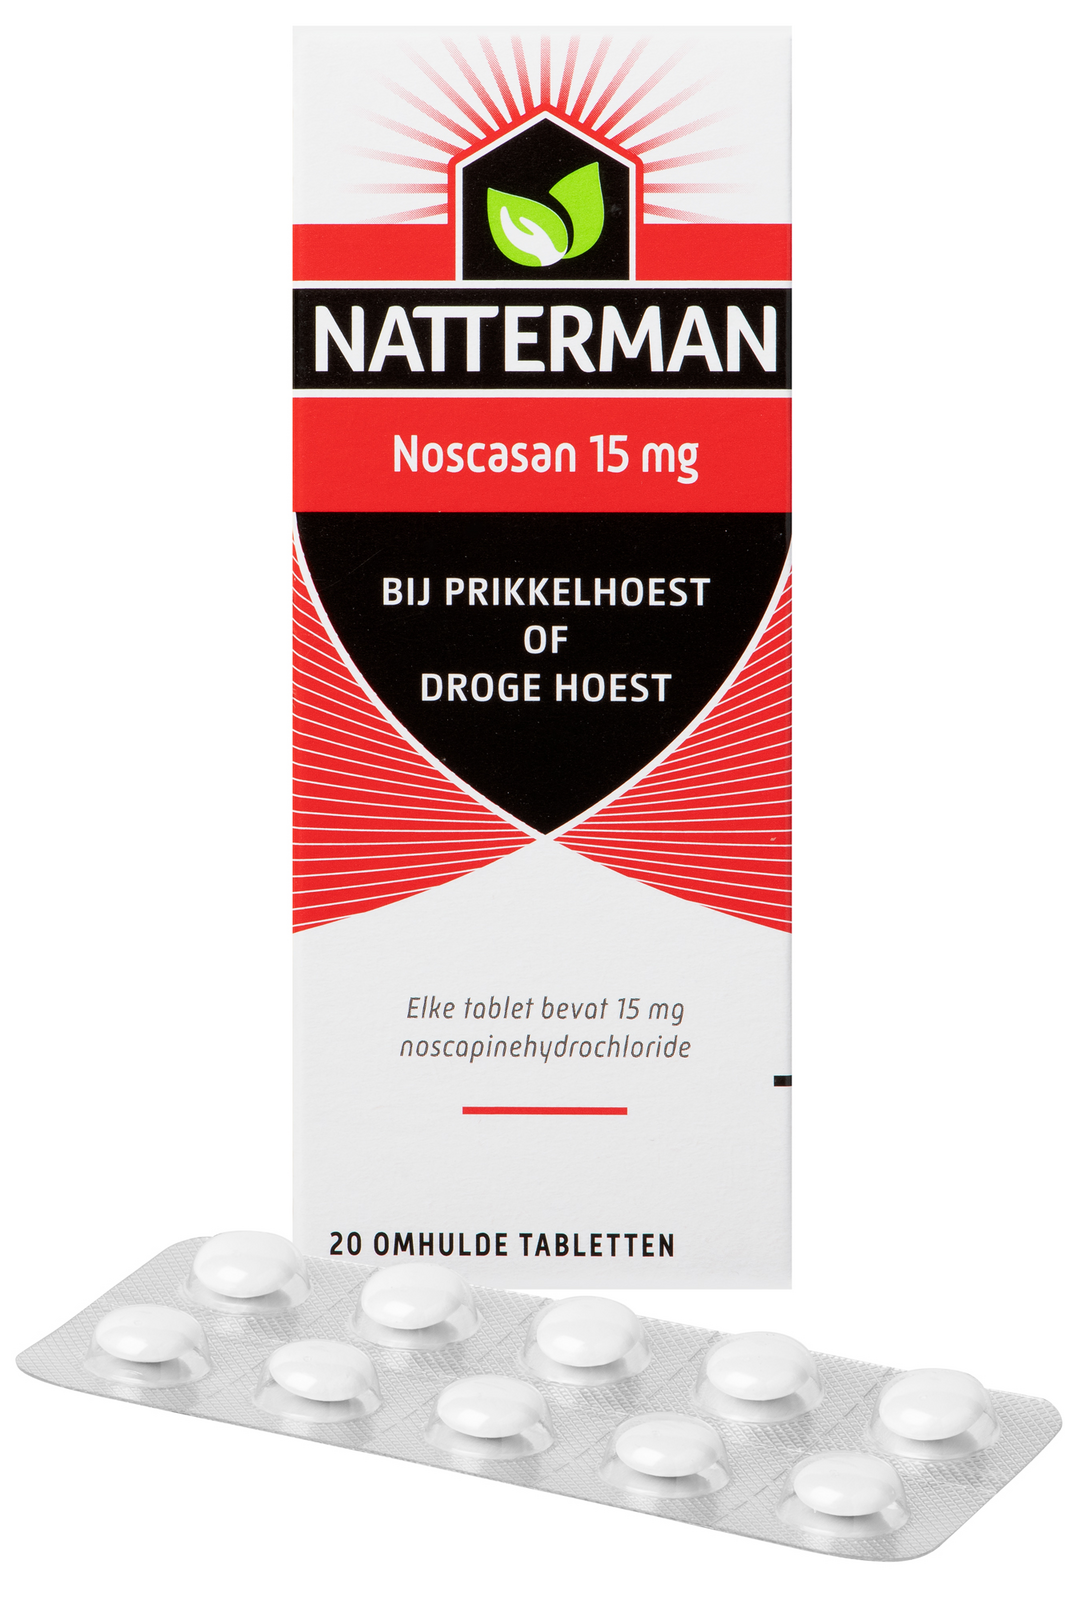 Natterman Noscasan 15 mg bij prikkelhoest of droge hoest Tabletten